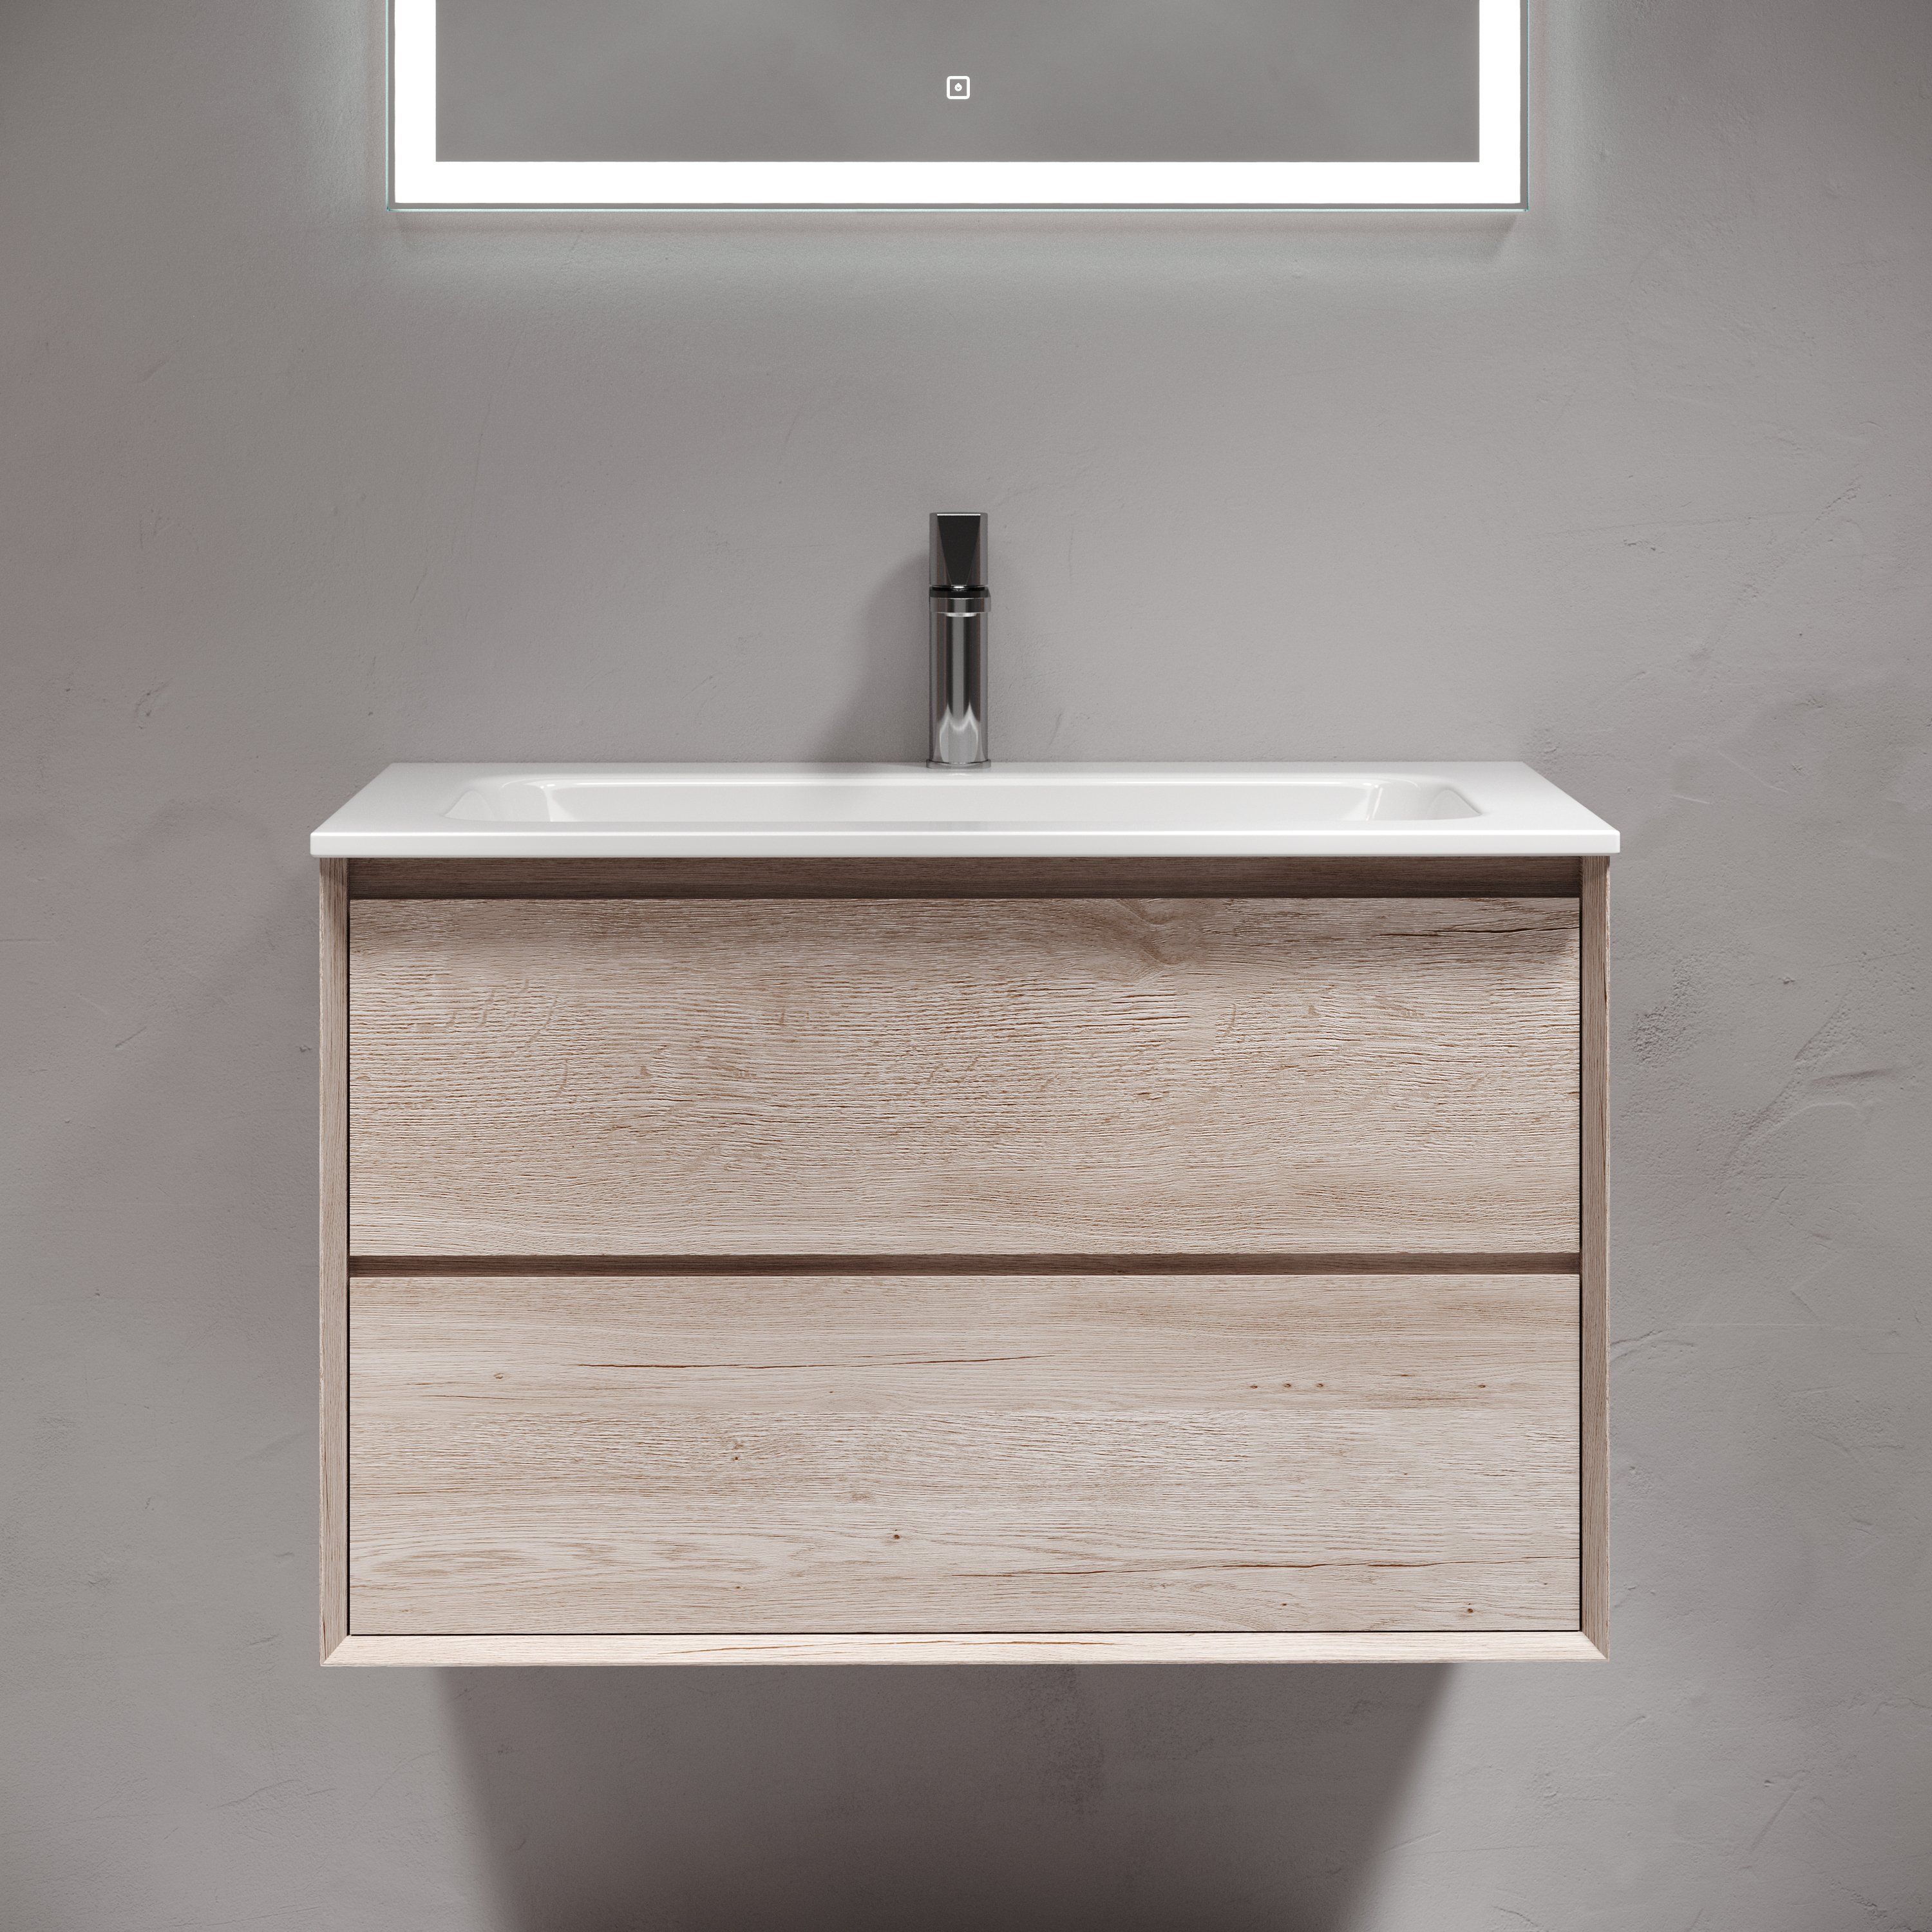 Мебель для ванной комнаты Sancos Marmi 2.0 80 см дуб галифакс натуральный, цвет коричневый MR2.080EG - фото 1